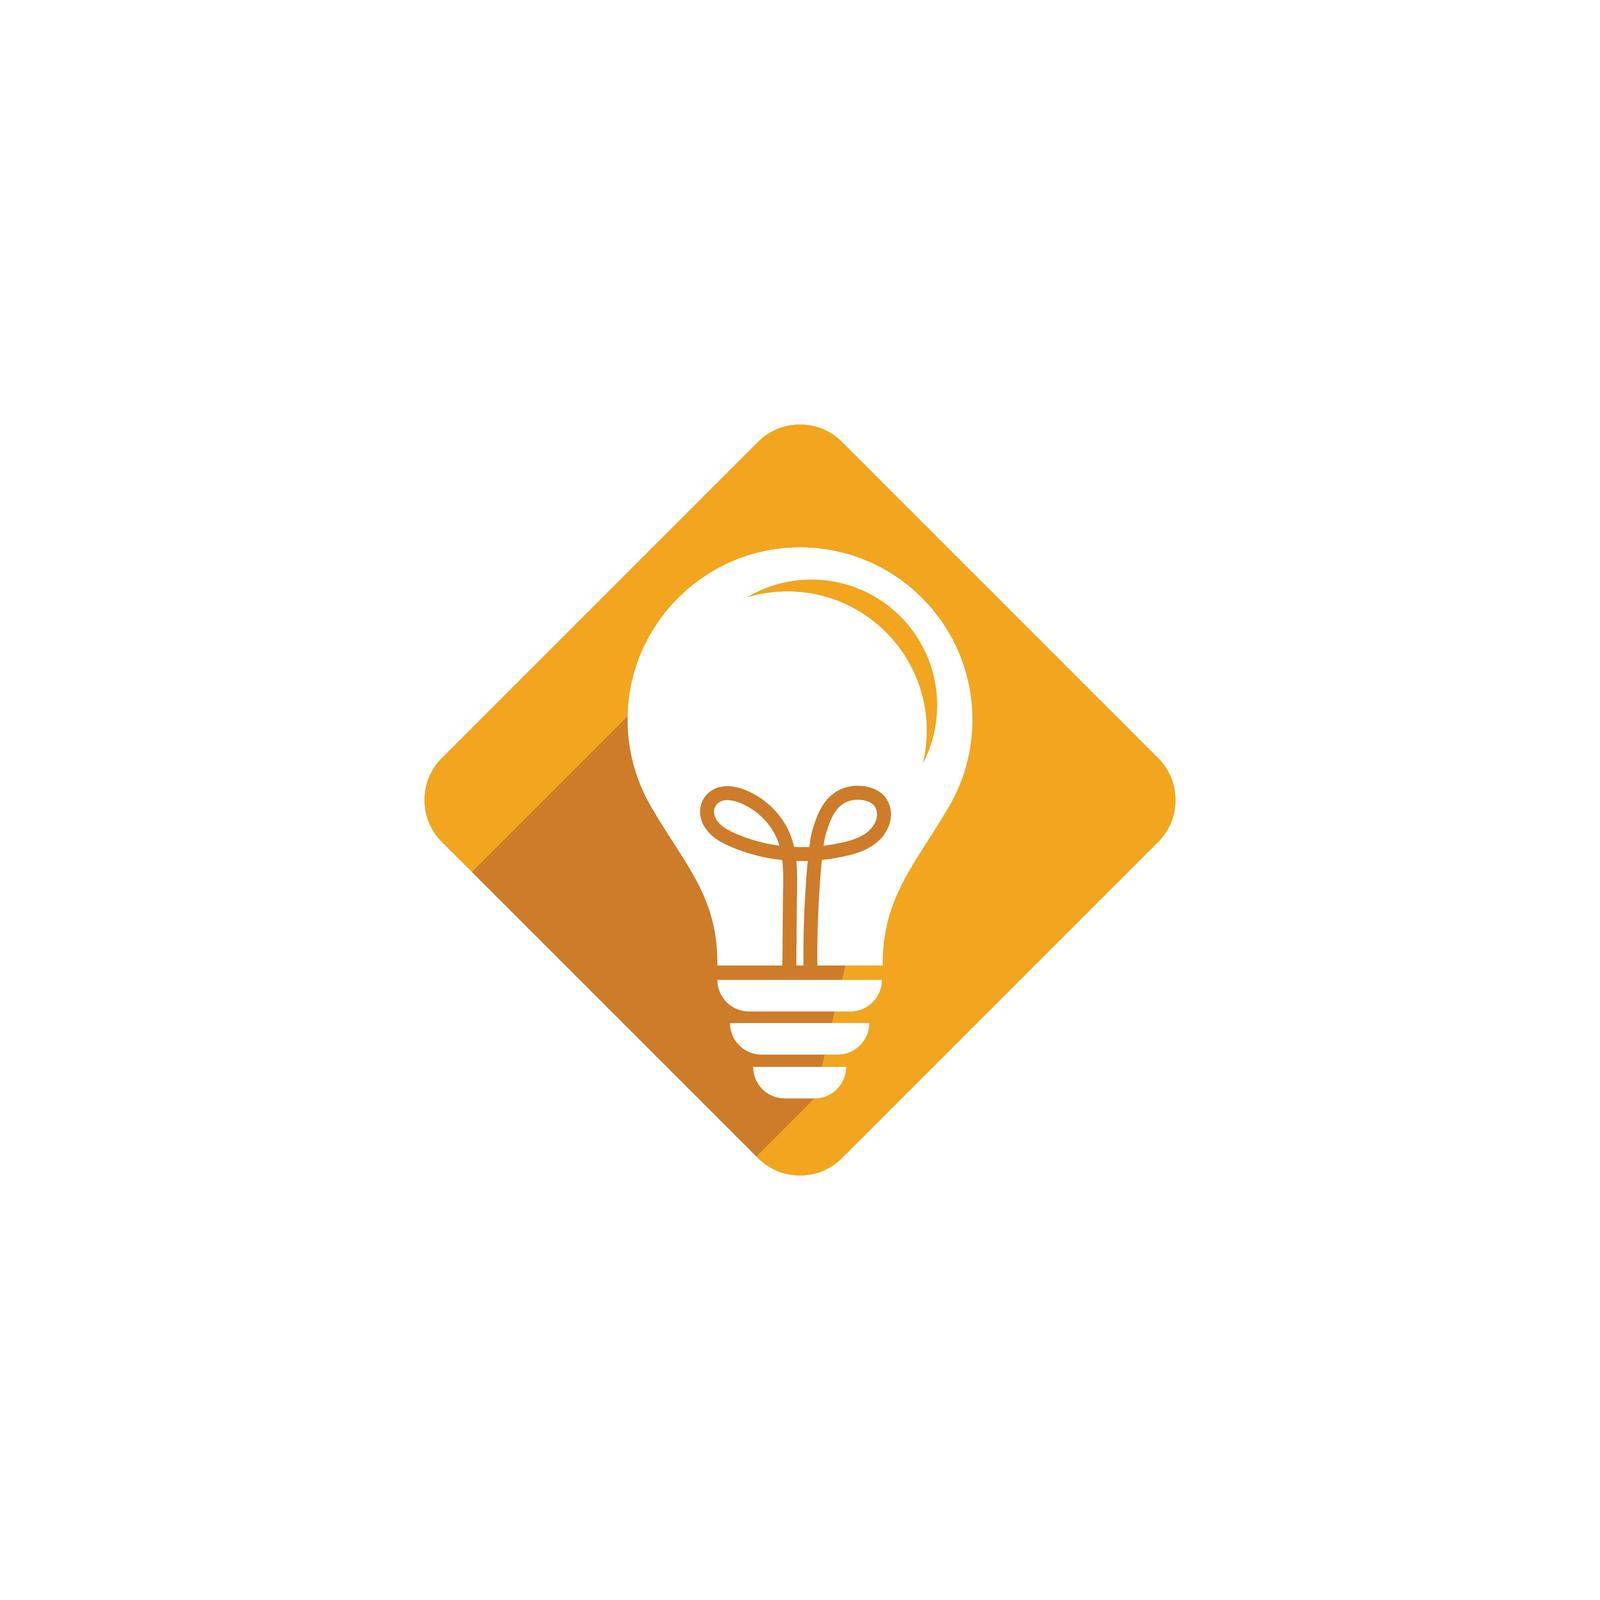 Bulb logo vector by awk